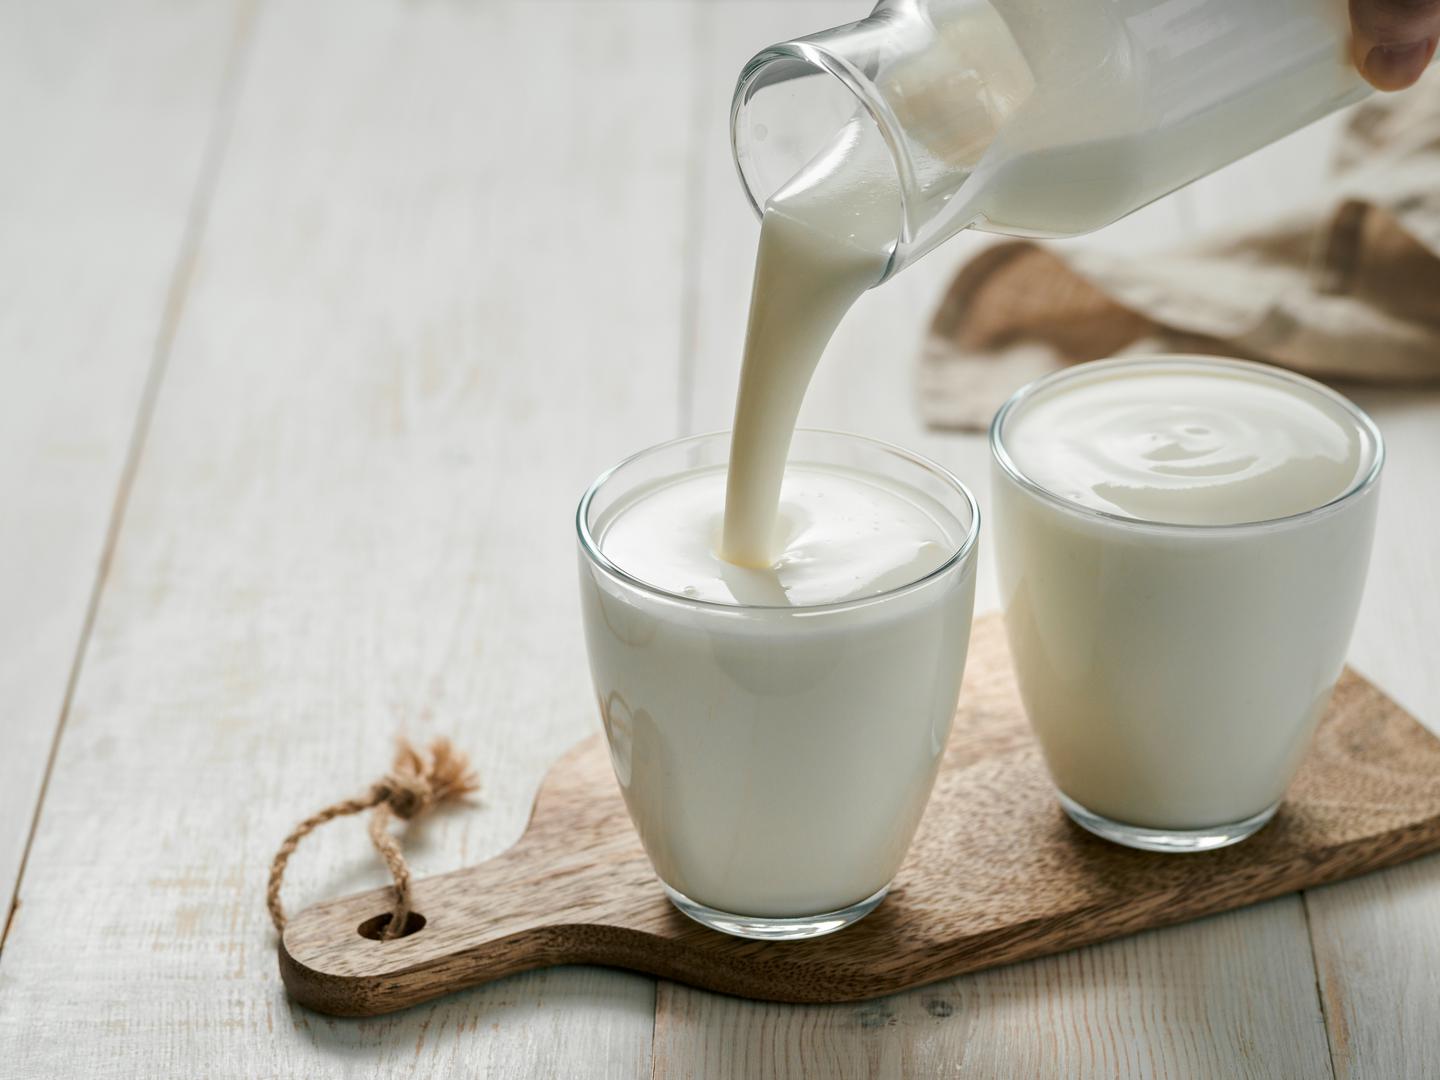 Jogurt: Za dulji život Comite preporučuje jesti jogurte bez dodanih šećera jer su bogati proteinima, kalcijem i magnezijem. Također sadrže gama-aminomaslačnu kiselinu (GABA), 'neurotransmiter koji opušta tijelo, smanjuje stres i poboljšava san'. Comite posebno voli grčki jogurt jer ima više GABA-e nego druge vrste jogurta.